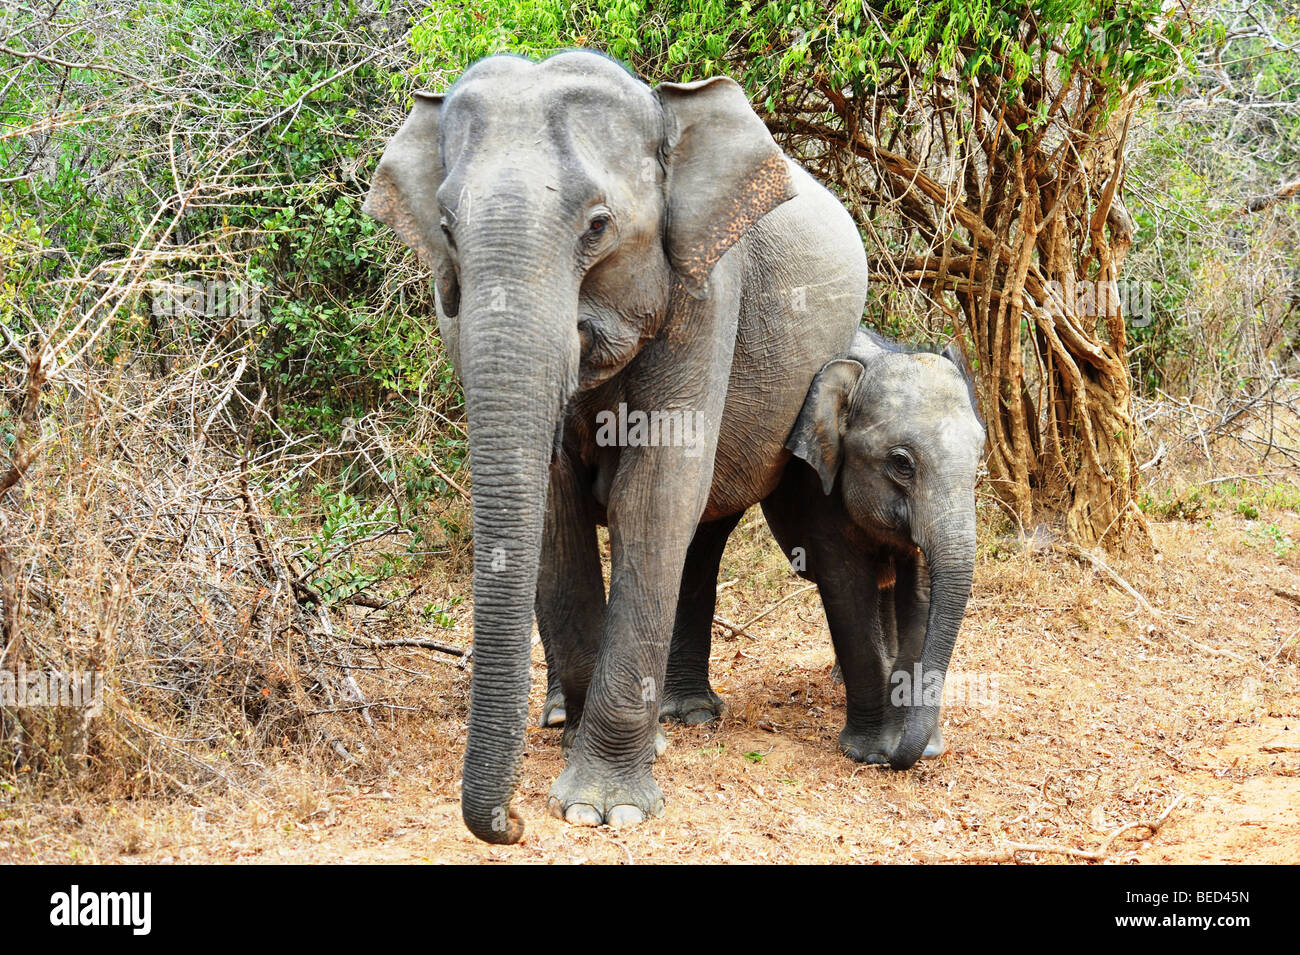 Mutter und Baby Elefanten im Dschungel Pinsel Sri Lanka Asien Stockfoto